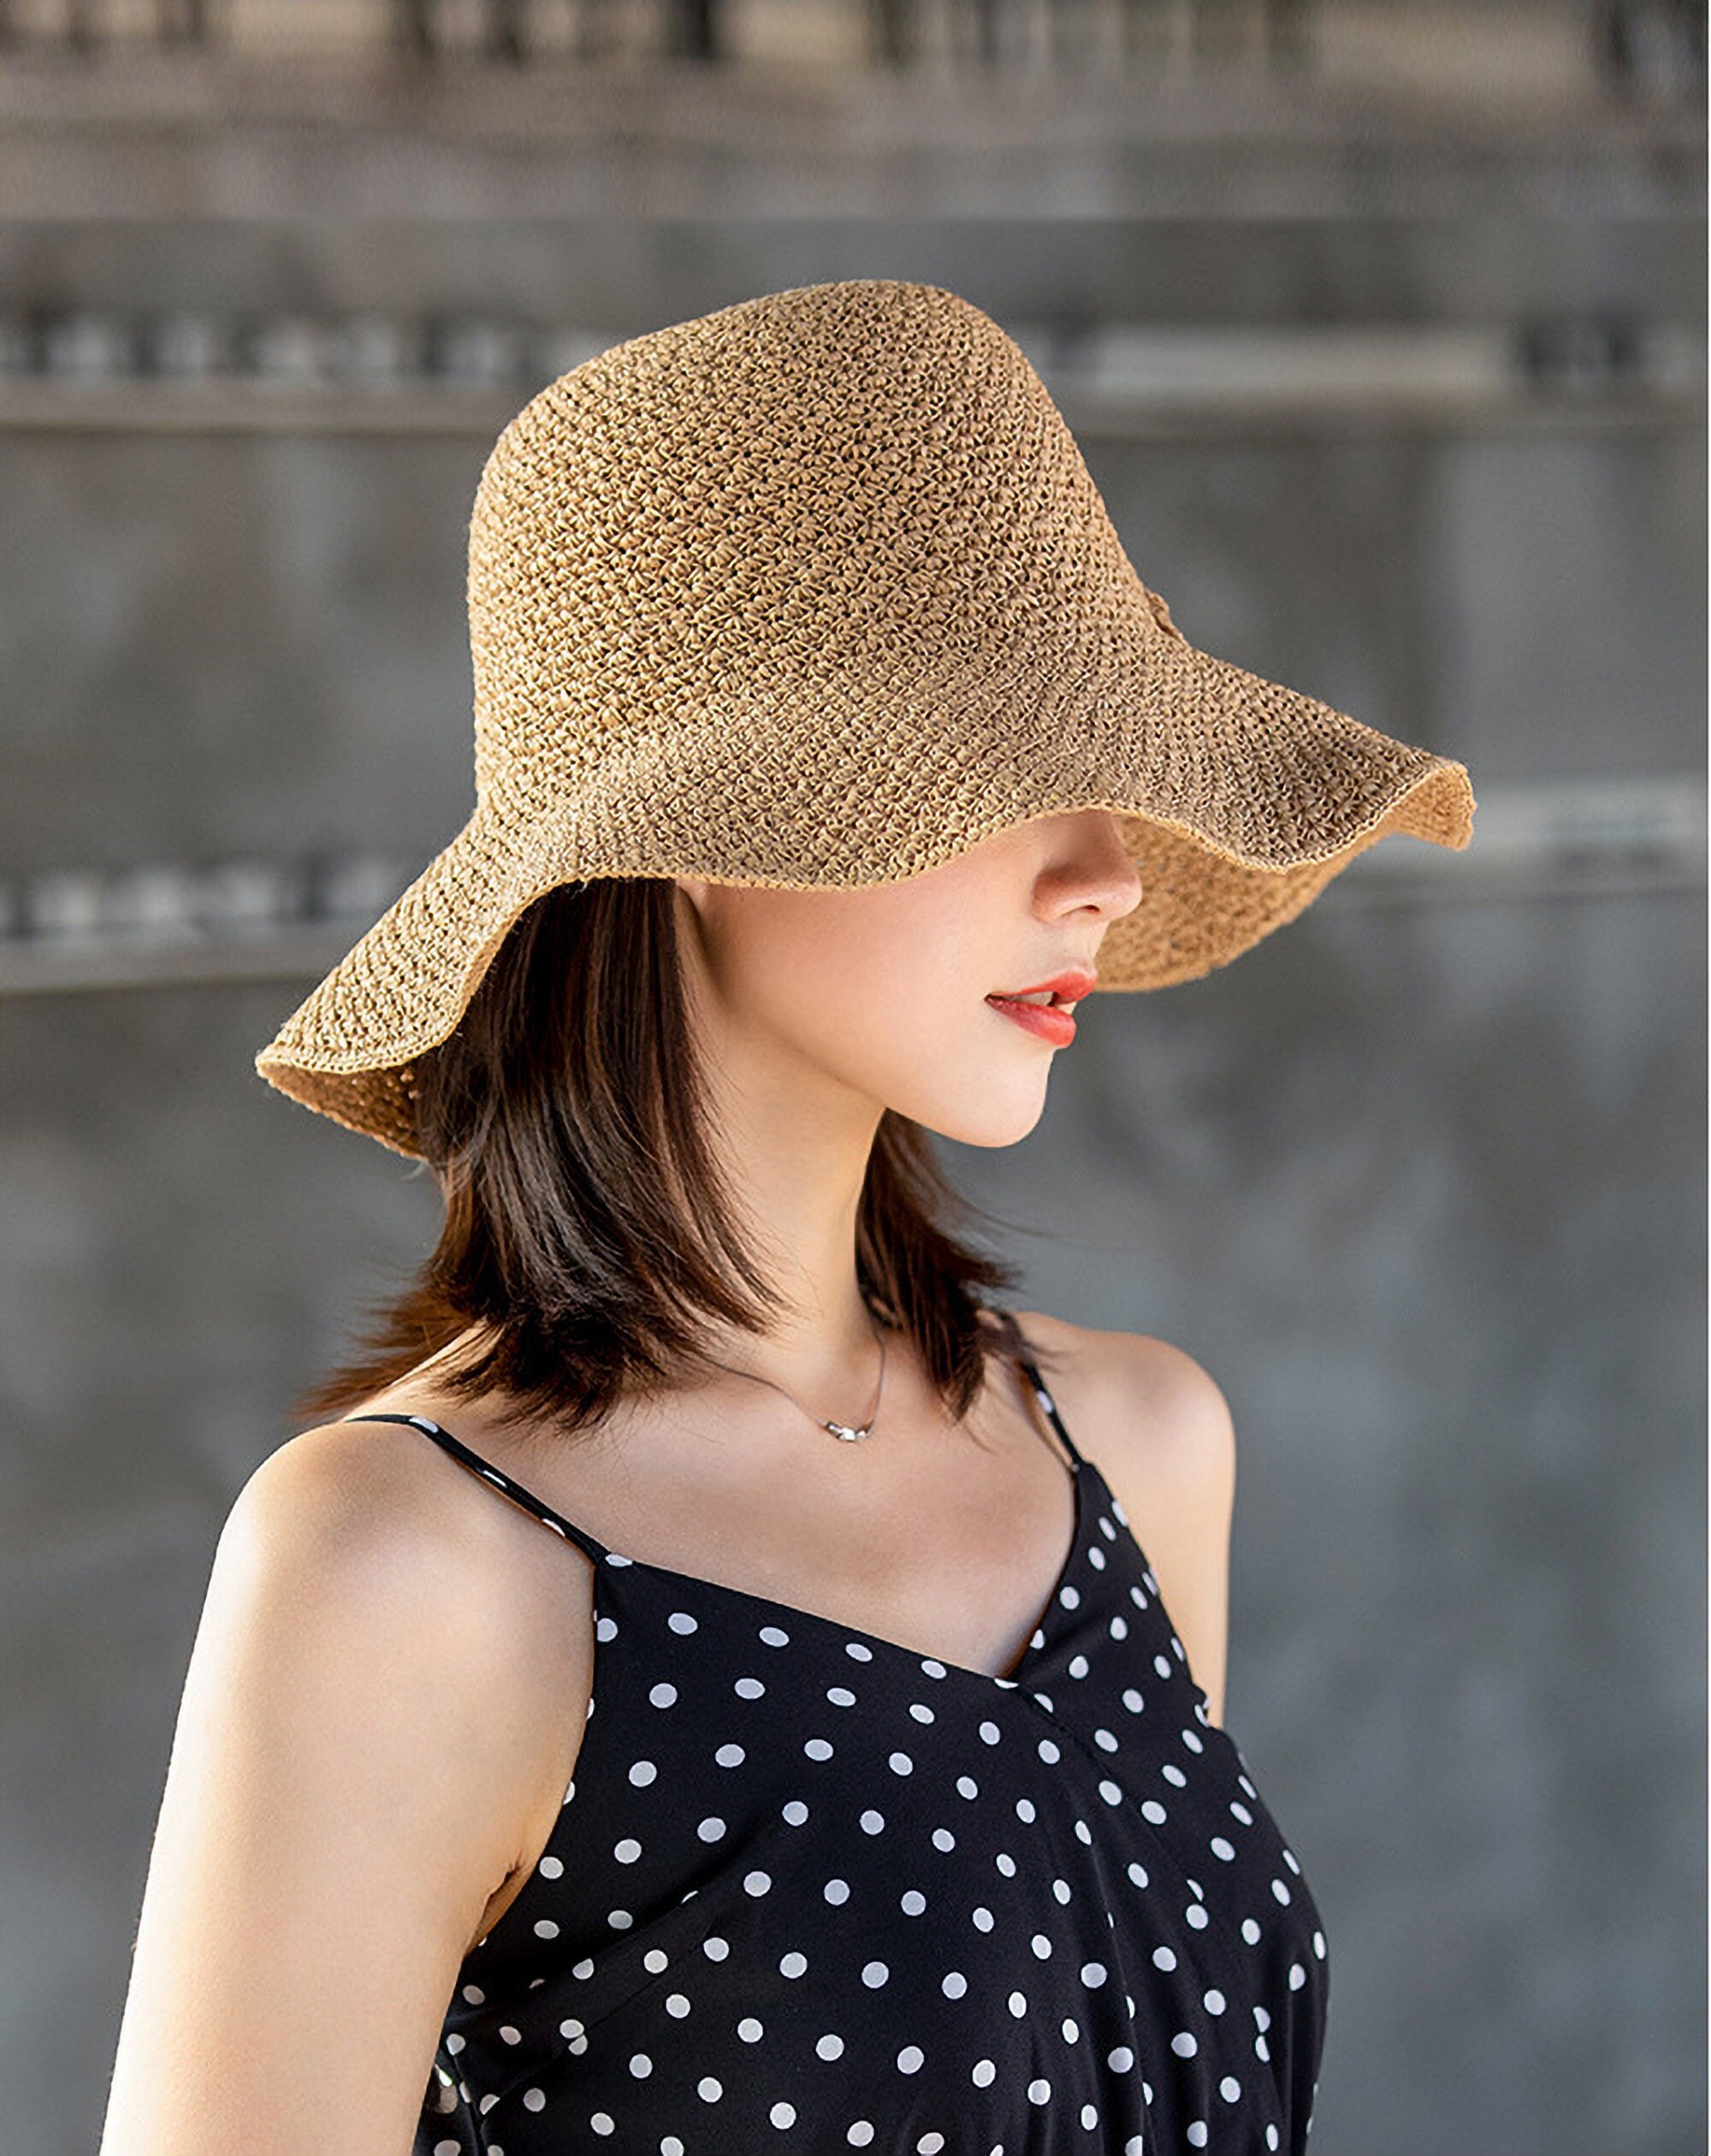 Straw wide brim sun hat ladies beach hat | Etsy